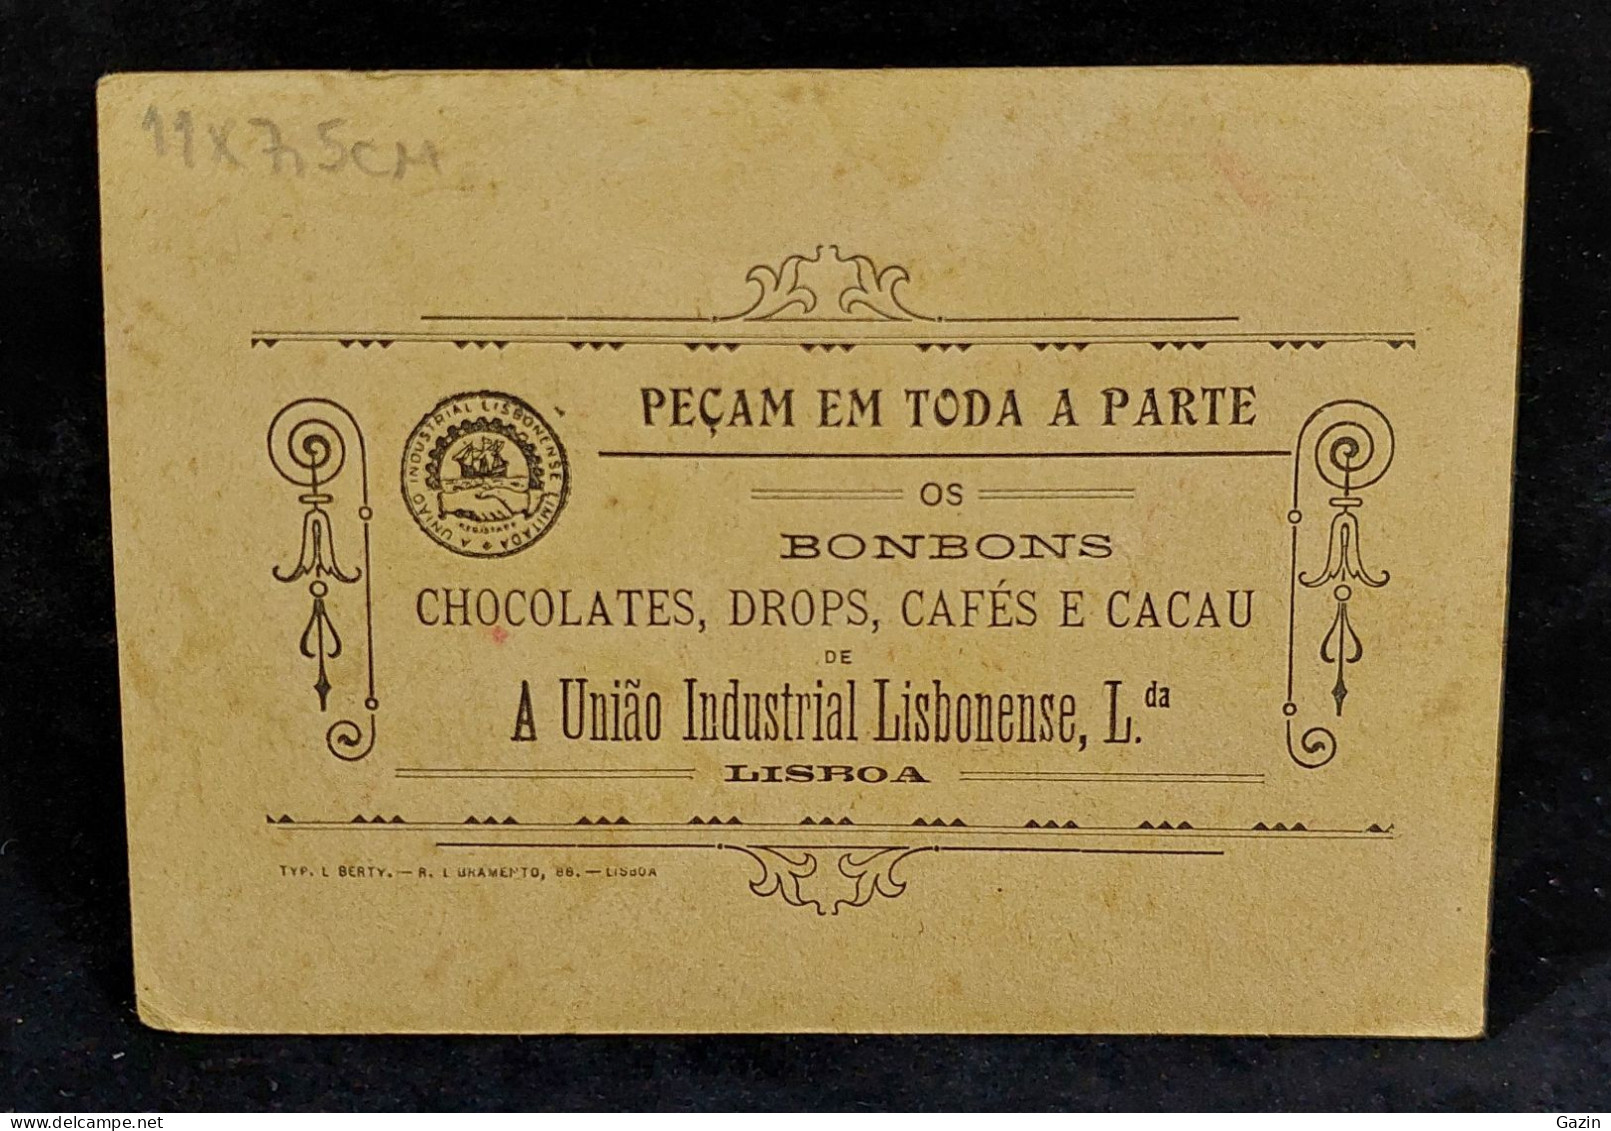 C6/11 - A União Ind. Lisbonense * Chocolates - Drops - Cafés E Cacau * Publicidade * Lisboa * Portugal - Portugal